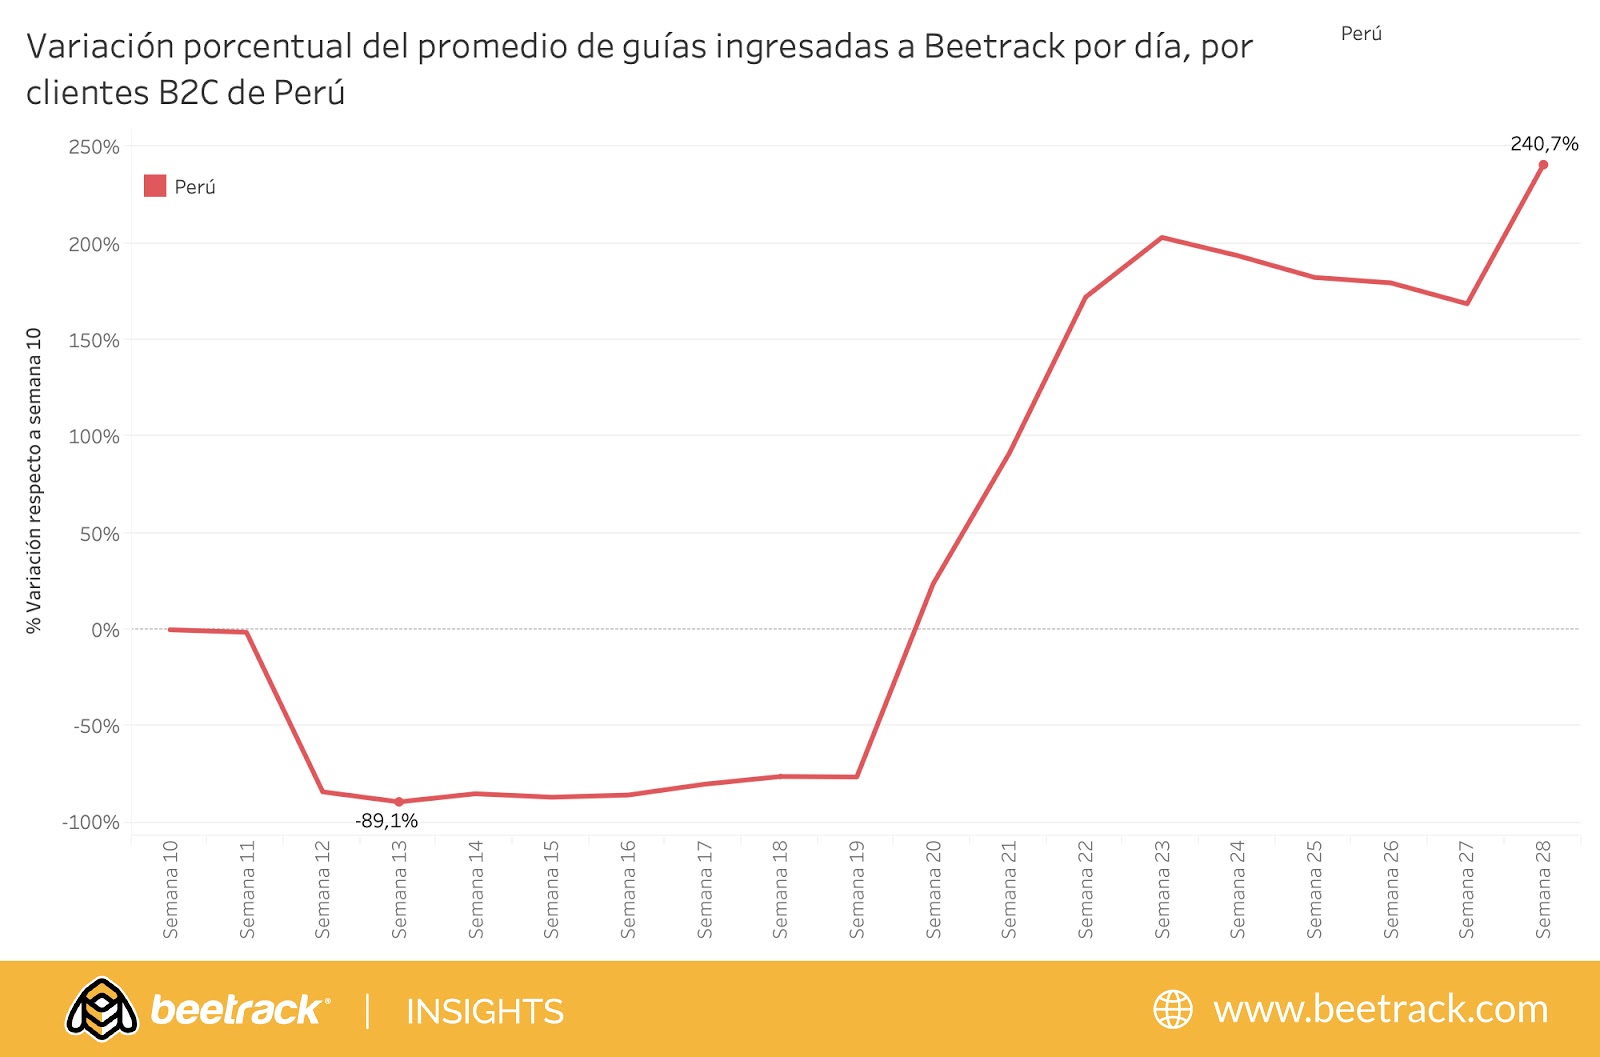 Tras el levantamiento a las restricciones al comercio electrónico en el Perú, Beetrack gestionó 240% más guías de envíos